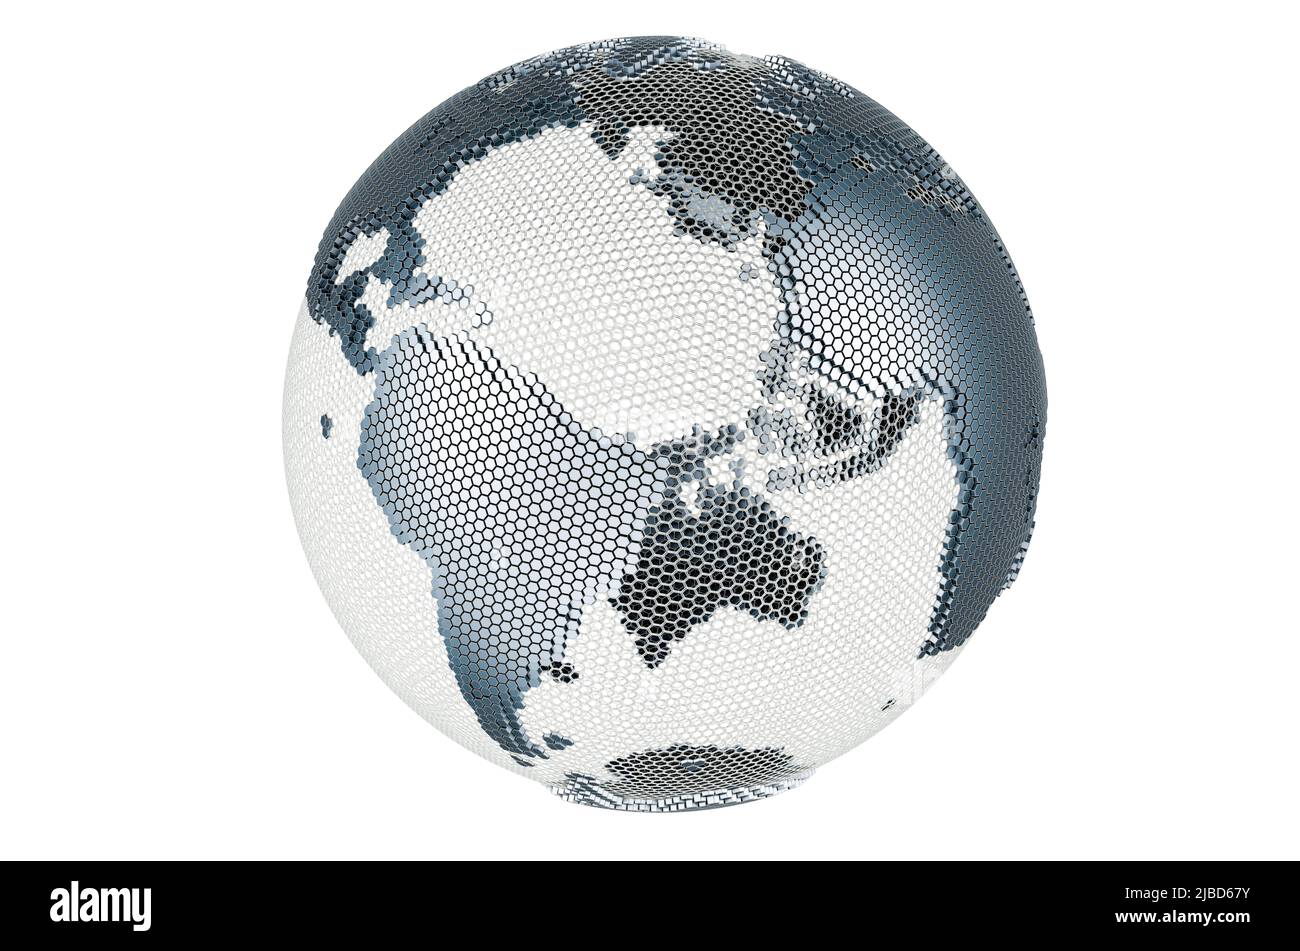 Astratto argento globo Terra, 3D rendering isolato su sfondo bianco Foto Stock